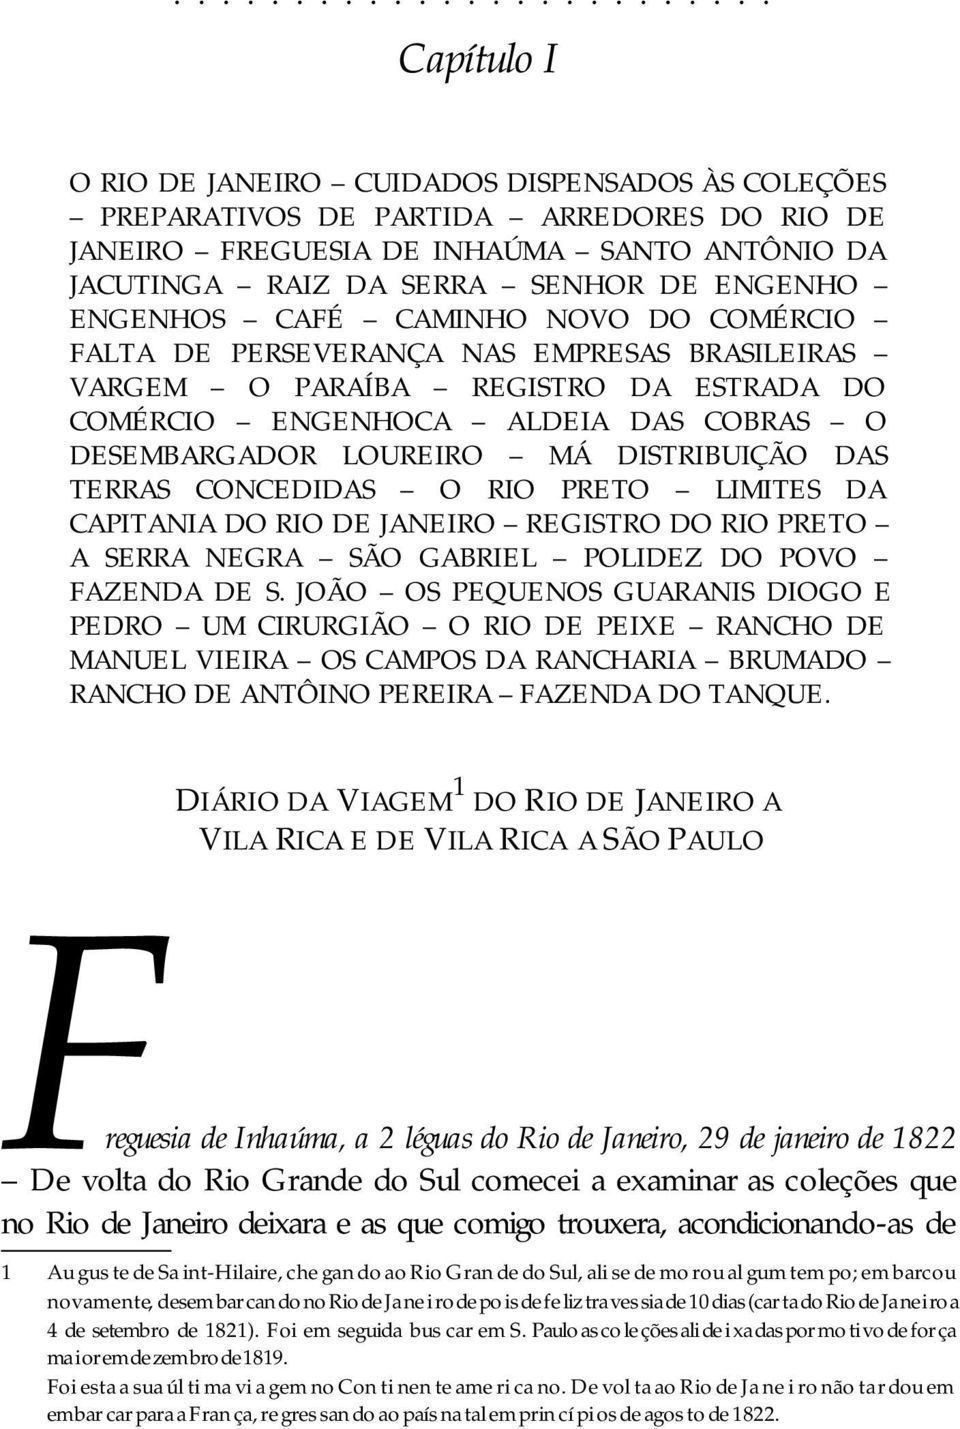 DESEMBARGADOR LOUREIRO MÁ DISTRIBUIÇÃO DAS TERRAS CONCEDIDAS O RIO PRETO LIMITES DA CAPITANIA DO RIO DE JANEIRO REGISTRO DO RIO PRETO A SERRA NEGRA SÃO GABRIEL POLIDEZ DO POVO FAZENDA DE S.